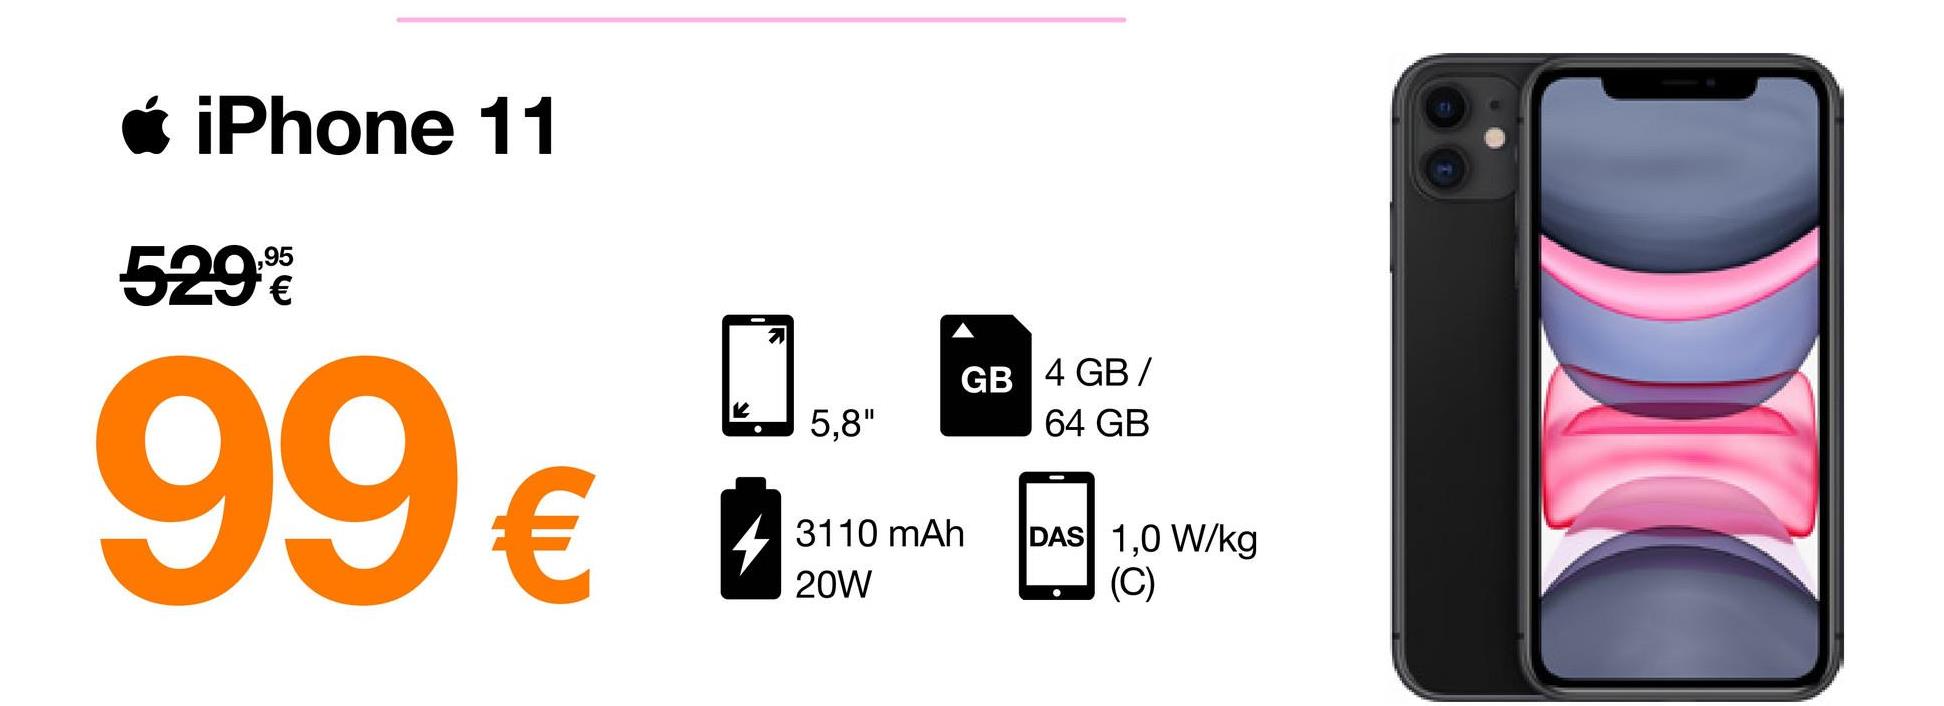 • iPhone 11
529€
99€
5,8"
GB 4 GB/
64 GB
3110 mAh
20W
DAS 1,0 W/kg
(C)